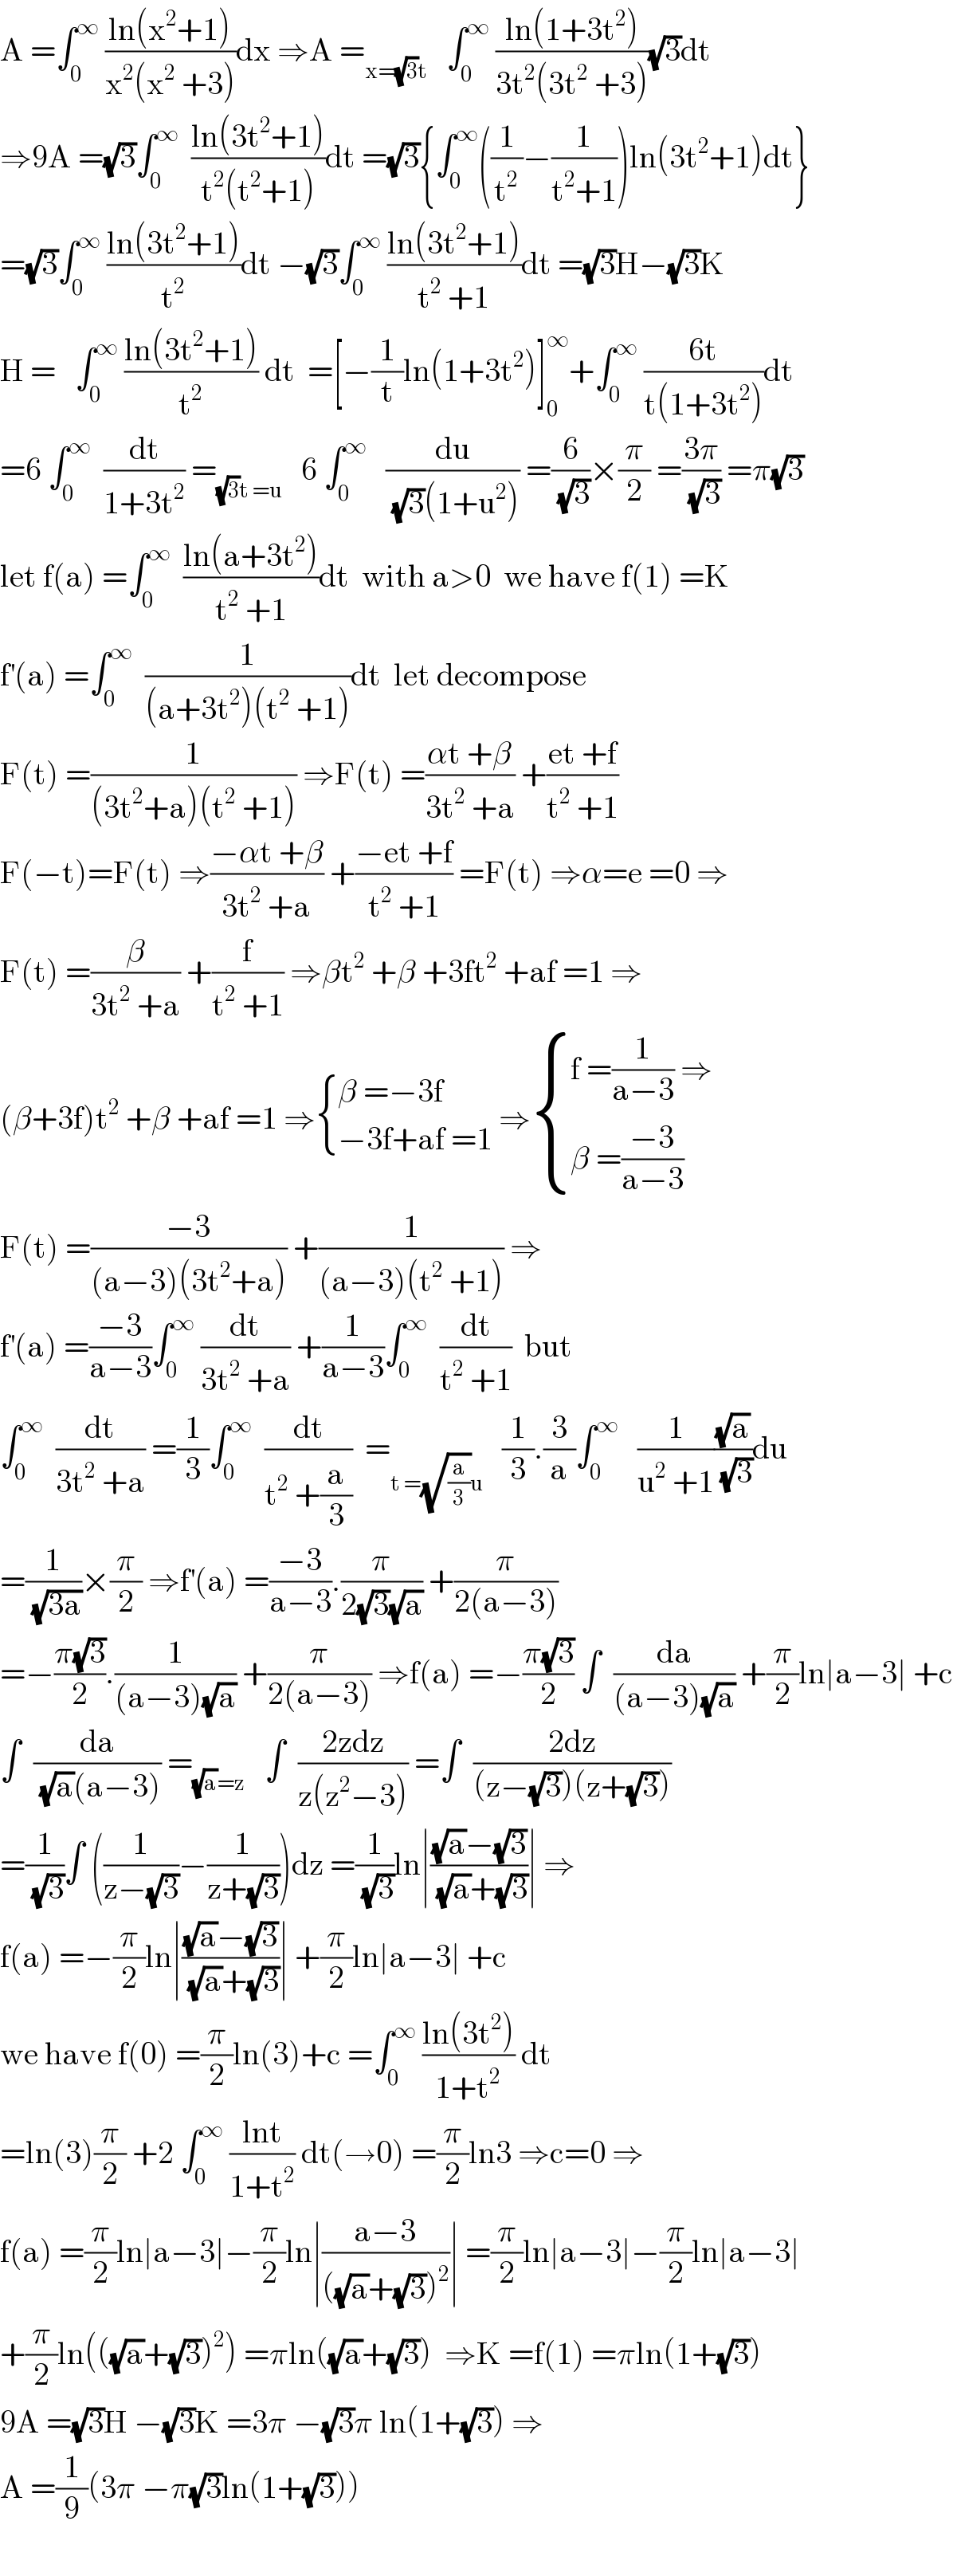 A =∫_0 ^∞  ((ln(x^2 +1))/(x^2 (x^2  +3)))dx ⇒A =_(x=(√3)t)    ∫_0 ^∞  ((ln(1+3t^2 ))/(3t^2 (3t^2  +3)))(√3)dt  ⇒9A =(√3)∫_0 ^∞   ((ln(3t^2 +1))/(t^2 (t^2 +1)))dt =(√3){∫_0 ^∞ ((1/t^2 )−(1/(t^2 +1)))ln(3t^2 +1)dt}  =(√3)∫_0 ^∞  ((ln(3t^2 +1))/t^2 )dt −(√3)∫_0 ^∞  ((ln(3t^2 +1))/(t^2  +1))dt =(√3)H−(√3)K  H =   ∫_0 ^∞  ((ln(3t^2 +1))/t^2 ) dt  =[−(1/t)ln(1+3t^2 )]_0 ^∞ +∫_0 ^∞  ((6t)/(t(1+3t^2 )))dt  =6 ∫_0 ^∞   (dt/(1+3t^2 )) =_((√3)t =u)    6 ∫_0 ^∞    (du/((√3)(1+u^2 ))) =(6/(√3))×(π/2) =((3π)/(√3)) =π(√3)  let f(a) =∫_0 ^∞   ((ln(a+3t^2 ))/(t^2  +1))dt  with a>0  we have f(1) =K  f^′ (a) =∫_0 ^∞   (1/((a+3t^2 )(t^2  +1)))dt  let decompose   F(t) =(1/((3t^2 +a)(t^2  +1))) ⇒F(t) =((αt +β)/(3t^2  +a)) +((et +f)/(t^2  +1))  F(−t)=F(t) ⇒((−αt +β)/(3t^2  +a)) +((−et +f)/(t^2  +1)) =F(t) ⇒α=e =0 ⇒  F(t) =(β/(3t^2  +a)) +(f/(t^2  +1)) ⇒βt^2  +β +3ft^2  +af =1 ⇒  (β+3f)t^2  +β +af =1 ⇒ { ((β =−3f)),((−3f+af =1)) :} ⇒ { ((f =(1/(a−3)) ⇒)),((β =((−3)/(a−3)))) :}  F(t) =((−3)/((a−3)(3t^2 +a))) +(1/((a−3)(t^2  +1))) ⇒  f^′ (a) =((−3)/(a−3))∫_0 ^∞  (dt/(3t^2  +a)) +(1/(a−3))∫_0 ^∞   (dt/(t^2  +1))  but  ∫_0 ^∞   (dt/(3t^2  +a)) =(1/3)∫_0 ^∞   (dt/(t^2  +(a/3)))  =_(t =(√(a/3))u)    (1/3).(3/a)∫_0 ^∞    (1/(u^2  +1))((√a)/(√3))du  =(1/(√(3a)))×(π/2) ⇒f^′ (a) =((−3)/(a−3)).(π/(2(√3)(√a))) +(π/(2(a−3)))  =−((π(√3))/2).(1/((a−3)(√a))) +(π/(2(a−3))) ⇒f(a) =−((π(√3))/2) ∫  (da/((a−3)(√a))) +(π/2)ln∣a−3∣ +c  ∫  (da/((√a)(a−3))) =_((√a)=z)    ∫  ((2zdz)/(z(z^2 −3))) =∫  ((2dz)/((z−(√3))(z+(√3))))  =(1/(√3))∫ ((1/(z−(√3)))−(1/(z+(√3))))dz =(1/(√3))ln∣(((√a)−(√3))/((√a)+(√3)))∣ ⇒  f(a) =−(π/2)ln∣(((√a)−(√3))/((√a)+(√3)))∣ +(π/2)ln∣a−3∣ +c  we have f(0) =(π/2)ln(3)+c =∫_0 ^∞  ((ln(3t^2 ))/(1+t^2 )) dt   =ln(3)(π/2) +2 ∫_0 ^∞  ((lnt)/(1+t^2 )) dt(→0) =(π/2)ln3 ⇒c=0 ⇒  f(a) =(π/2)ln∣a−3∣−(π/2)ln∣((a−3)/(((√a)+(√3))^2 ))∣ =(π/2)ln∣a−3∣−(π/2)ln∣a−3∣  +(π/2)ln(((√a)+(√3))^2 ) =πln((√a)+(√3))  ⇒K =f(1) =πln(1+(√3))  9A =(√3)H −(√3)K =3π −(√3)π ln(1+(√3)) ⇒  A =(1/9)(3π −π(√3)ln(1+(√3)))    